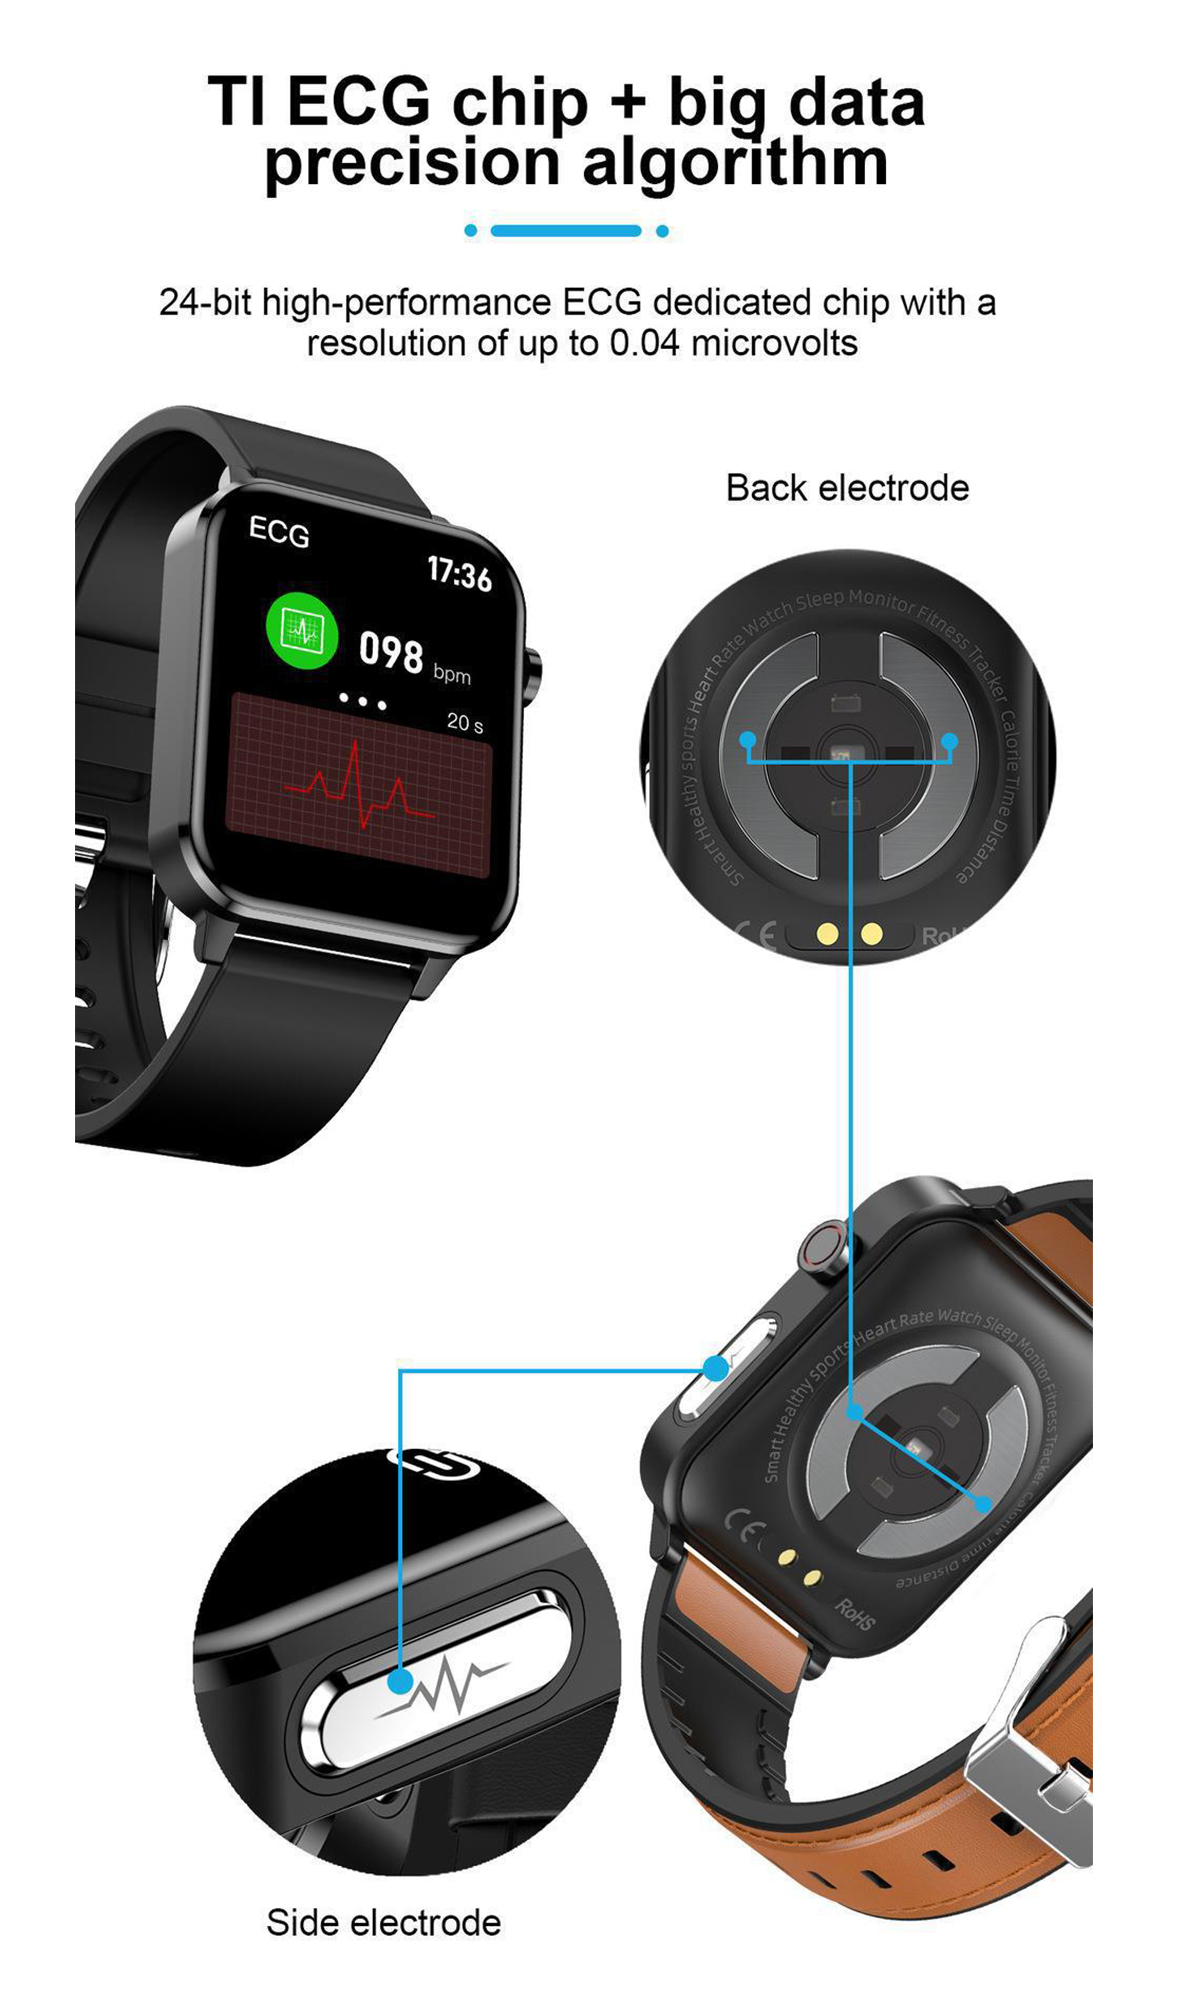 Leben Ihr Ultralange Smartwatch Akkulaufzeit! Smartwatch, verändert Leder, die Die BRIGHTAKE Braun